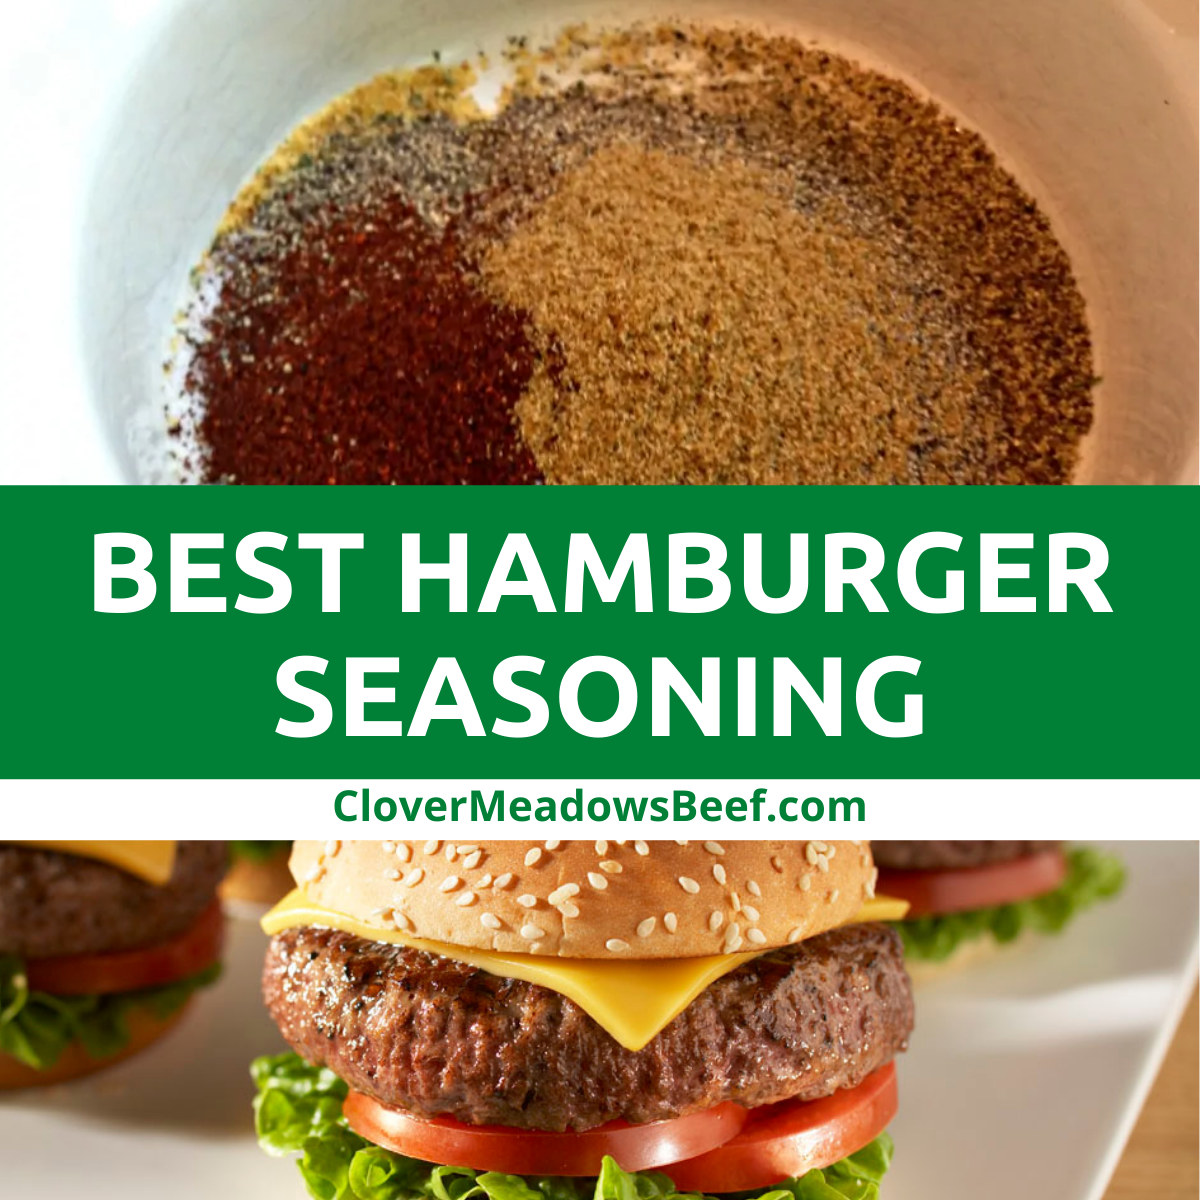 https://www.clovermeadowsbeef.com/wp-content/uploads/2020/07/best-hamburger-seasoning-ground-beef.png